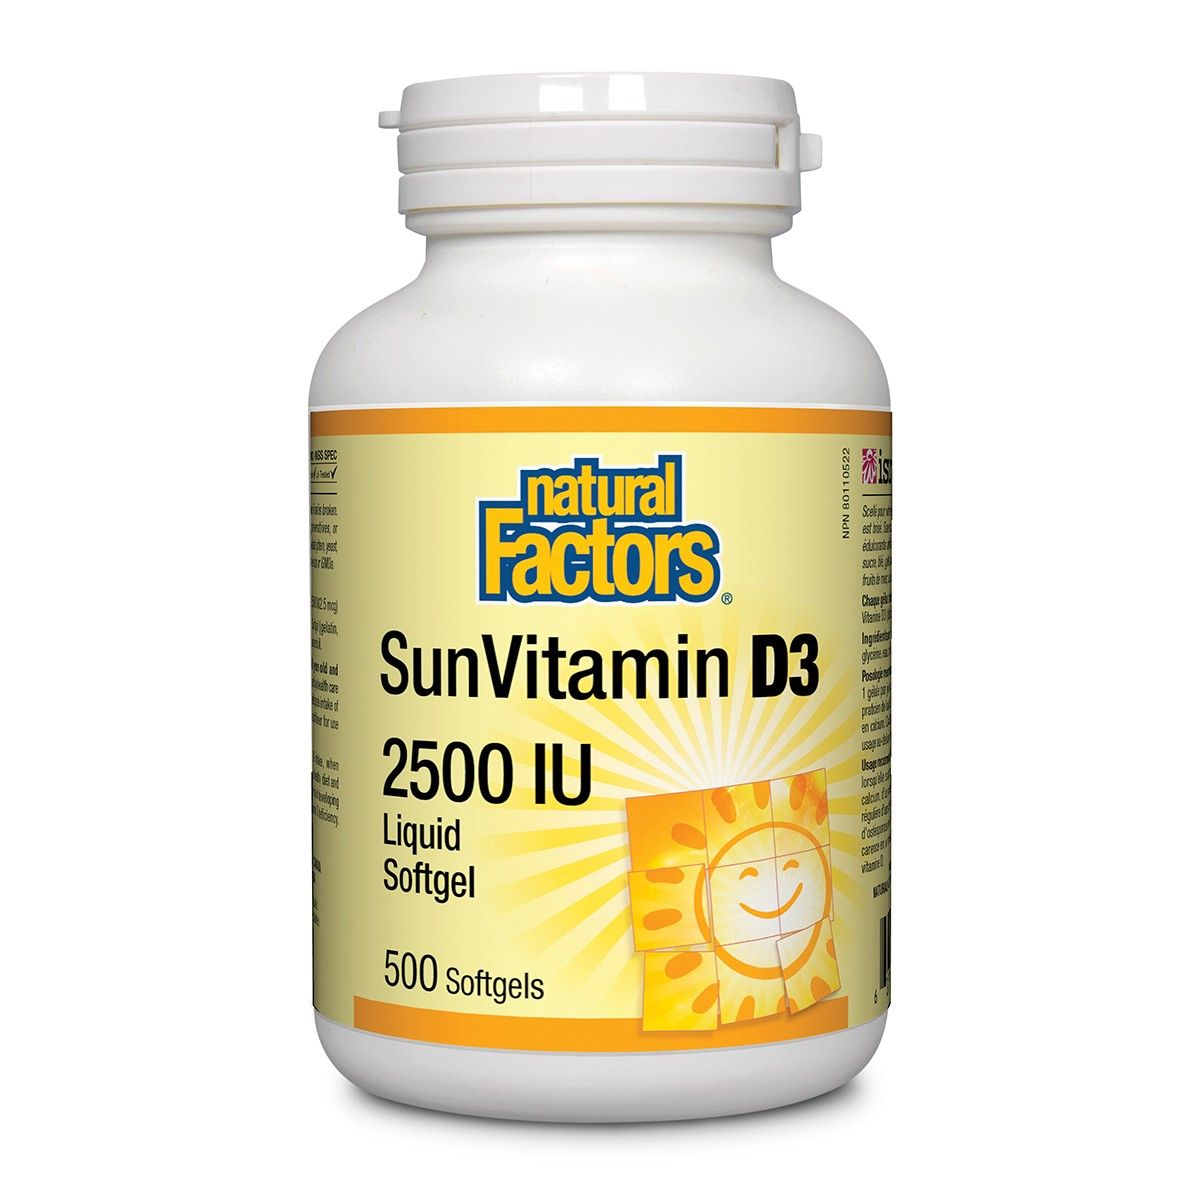 SunVitamin D3 2500 IU 500 Softgels